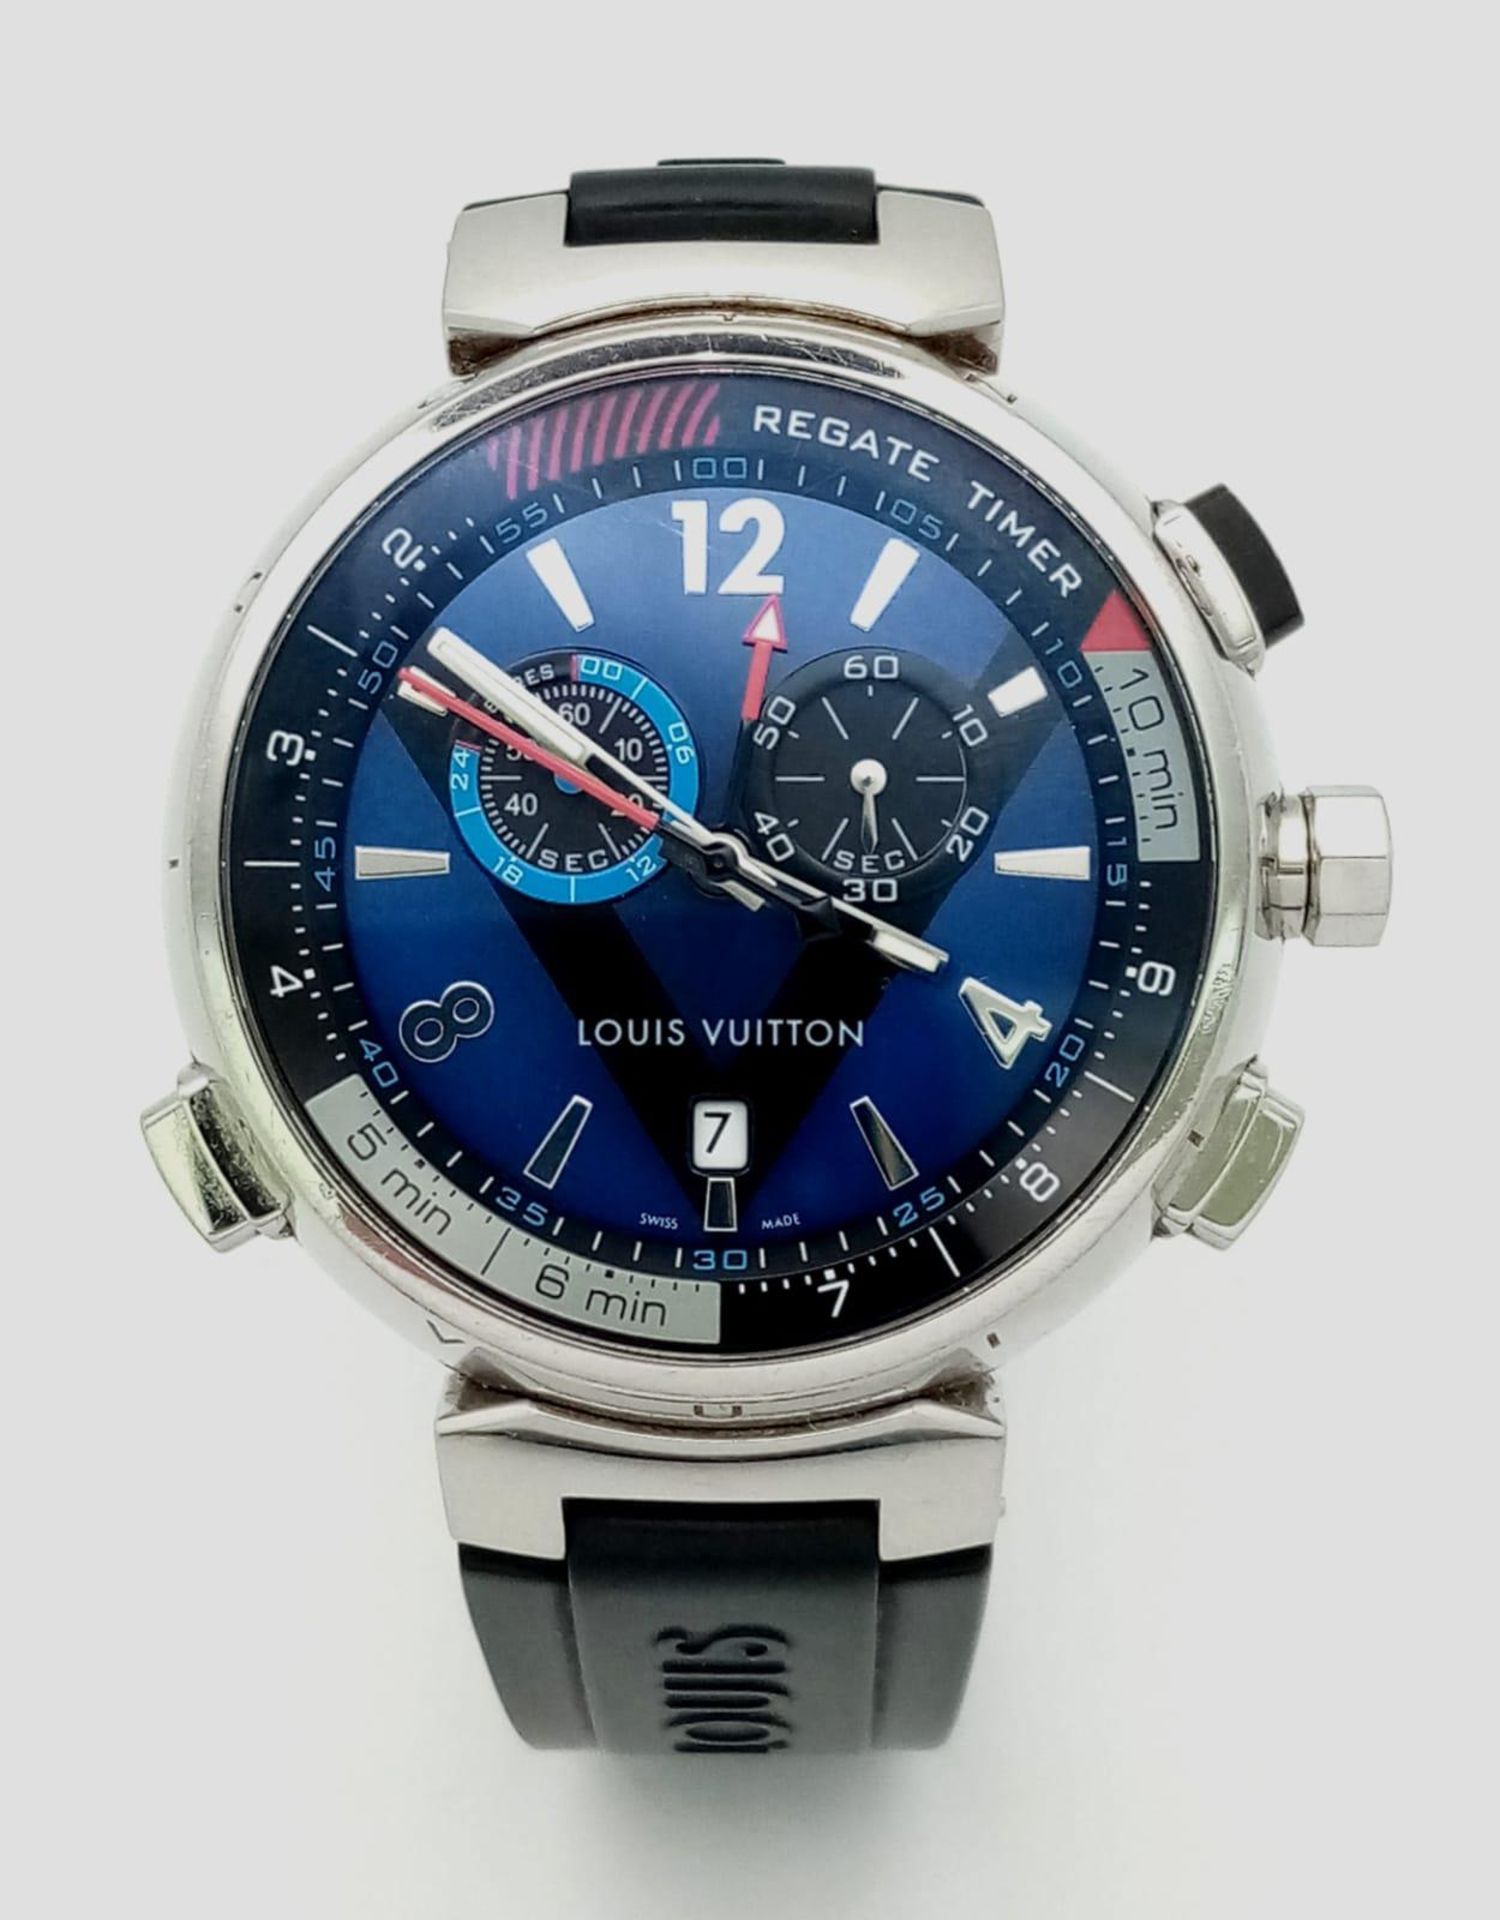 A Louis Vuitton Tambour Regatta Navy Men's Quartz Chronograph Watch. Black LV rubber strap. - Image 3 of 17